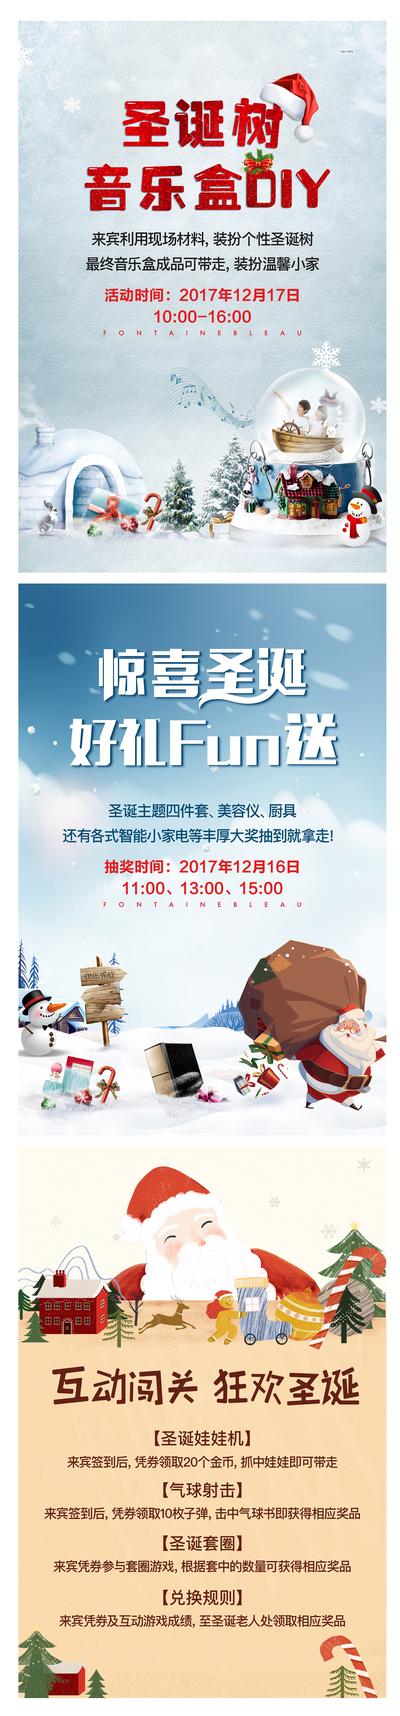 南门网 海报  西方节日  地产  圣诞节  圣诞老人   冰雪  冬天  礼物  音乐盒 